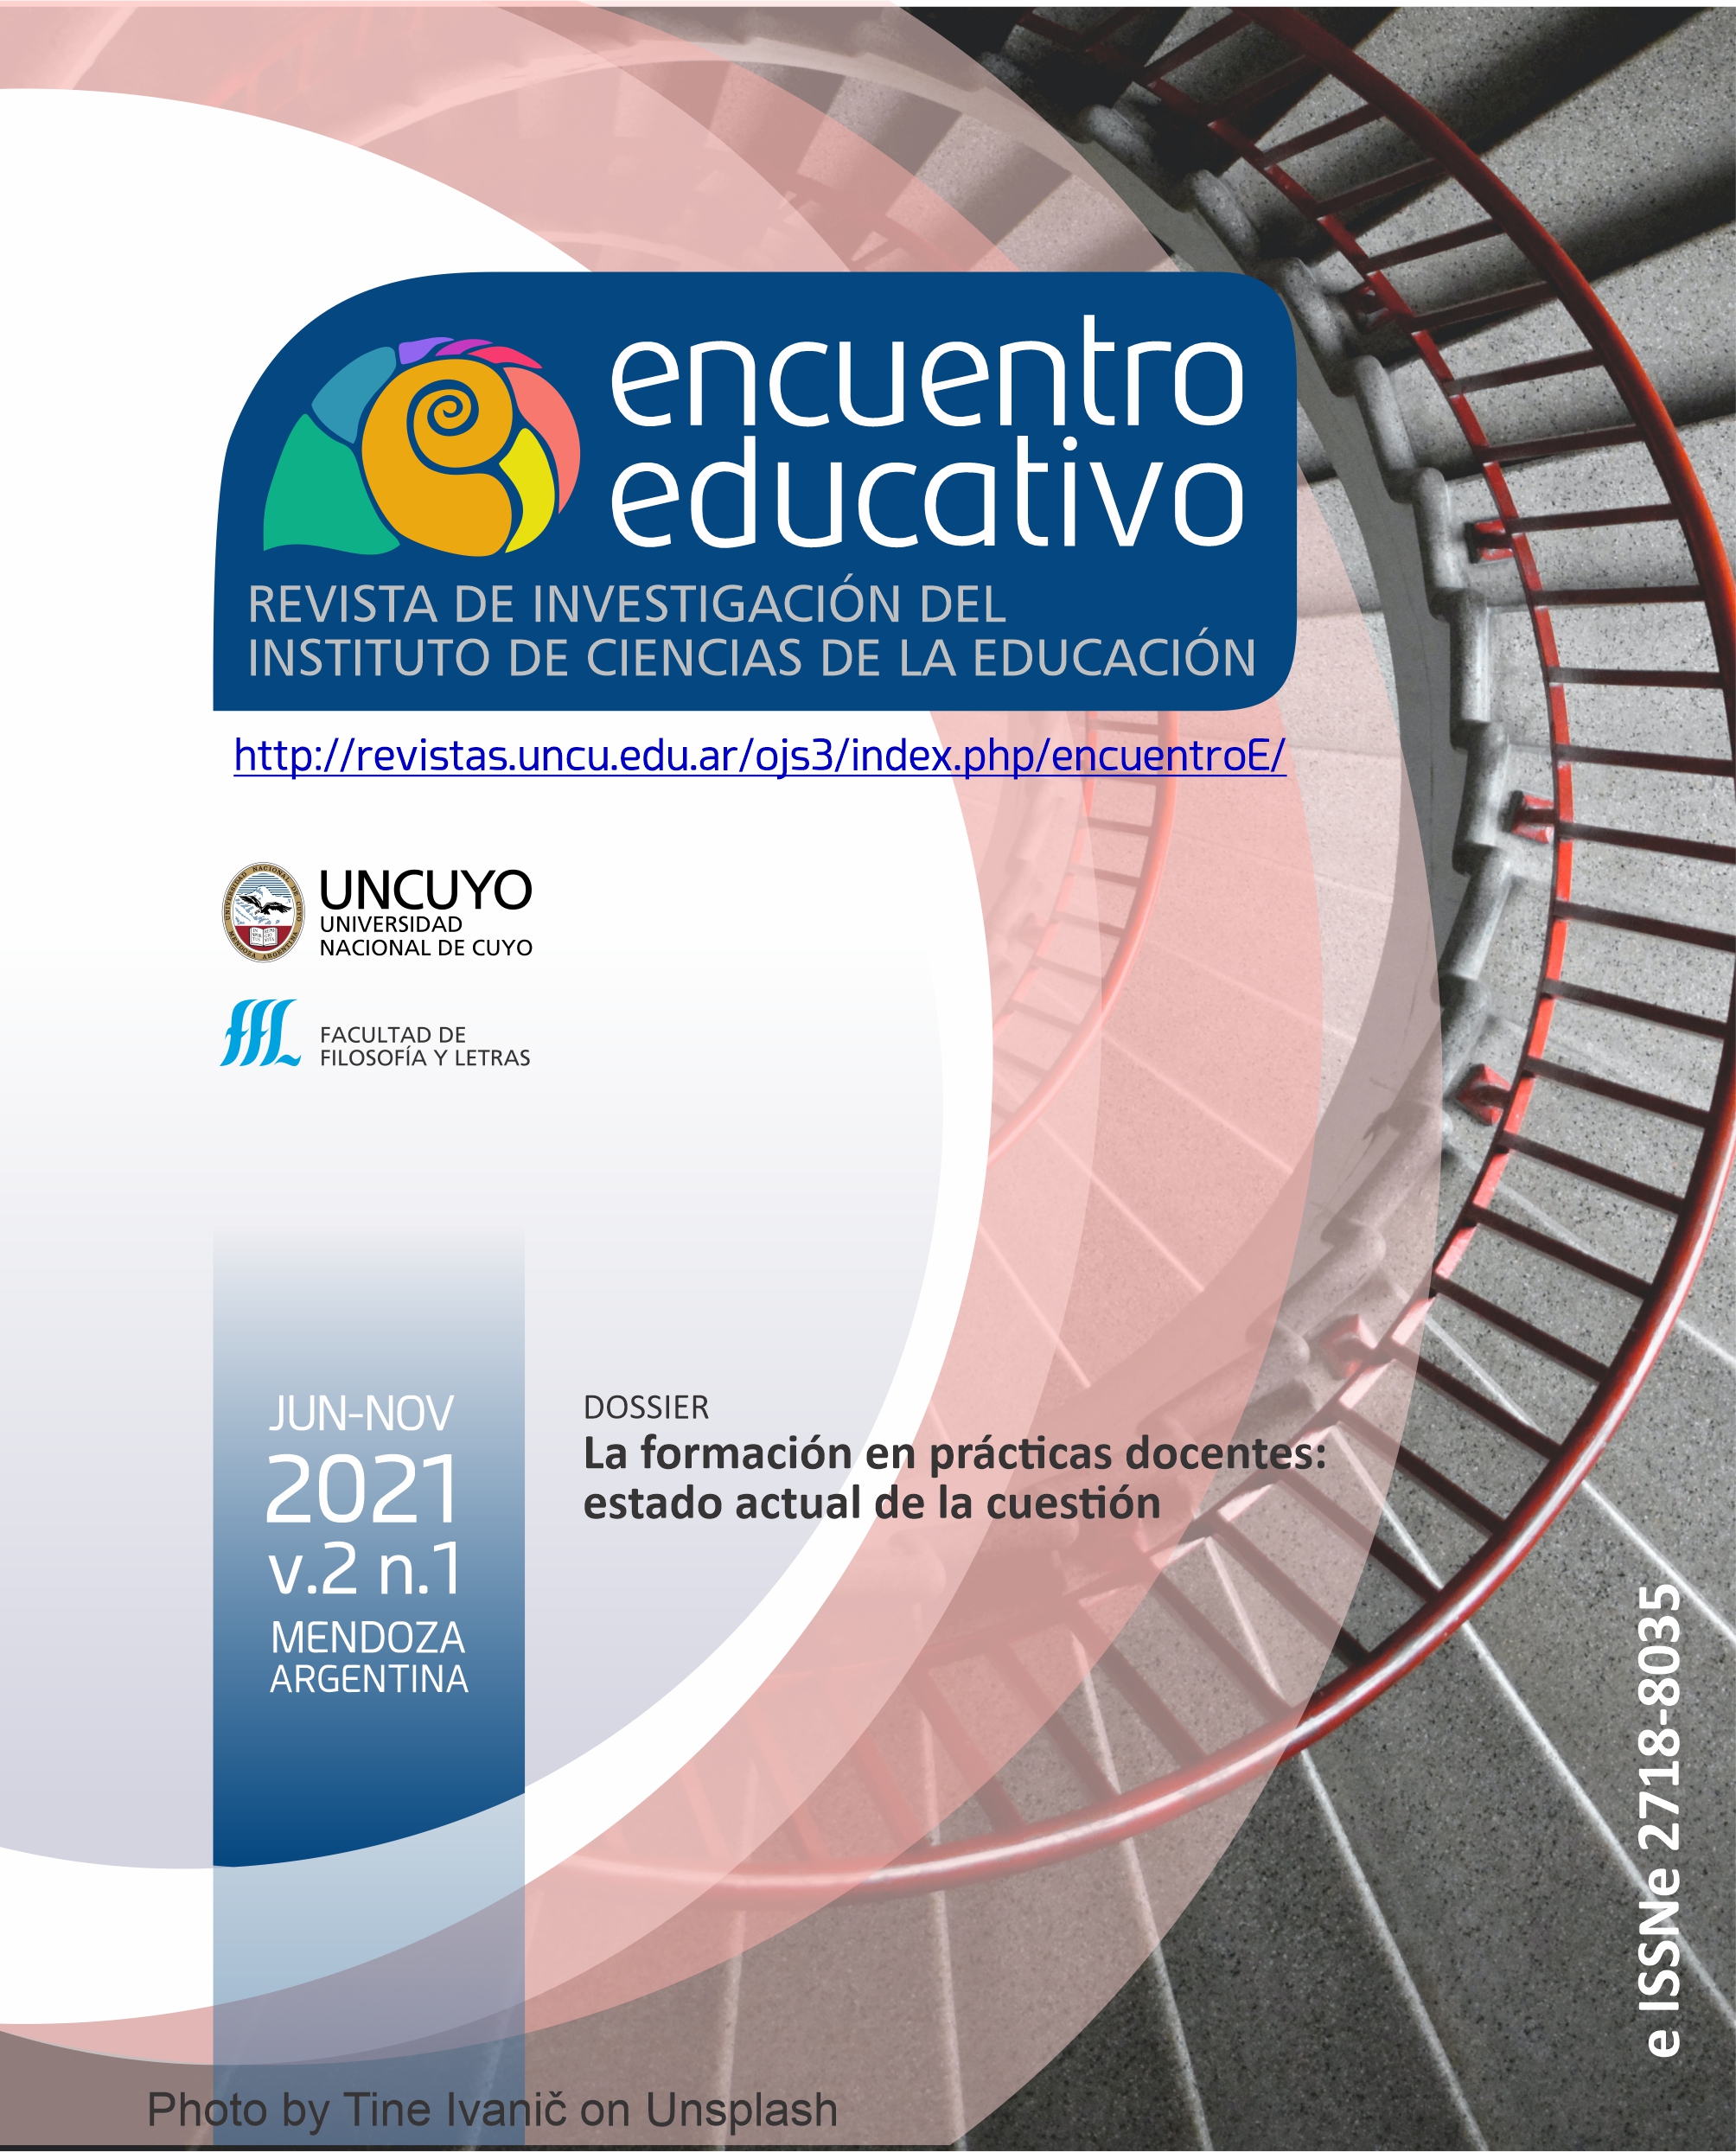 					Visualizar v. 2 n. 1 (2021): DOSSIER La formación en prácticas docentes: estado actual de la cuestión
				